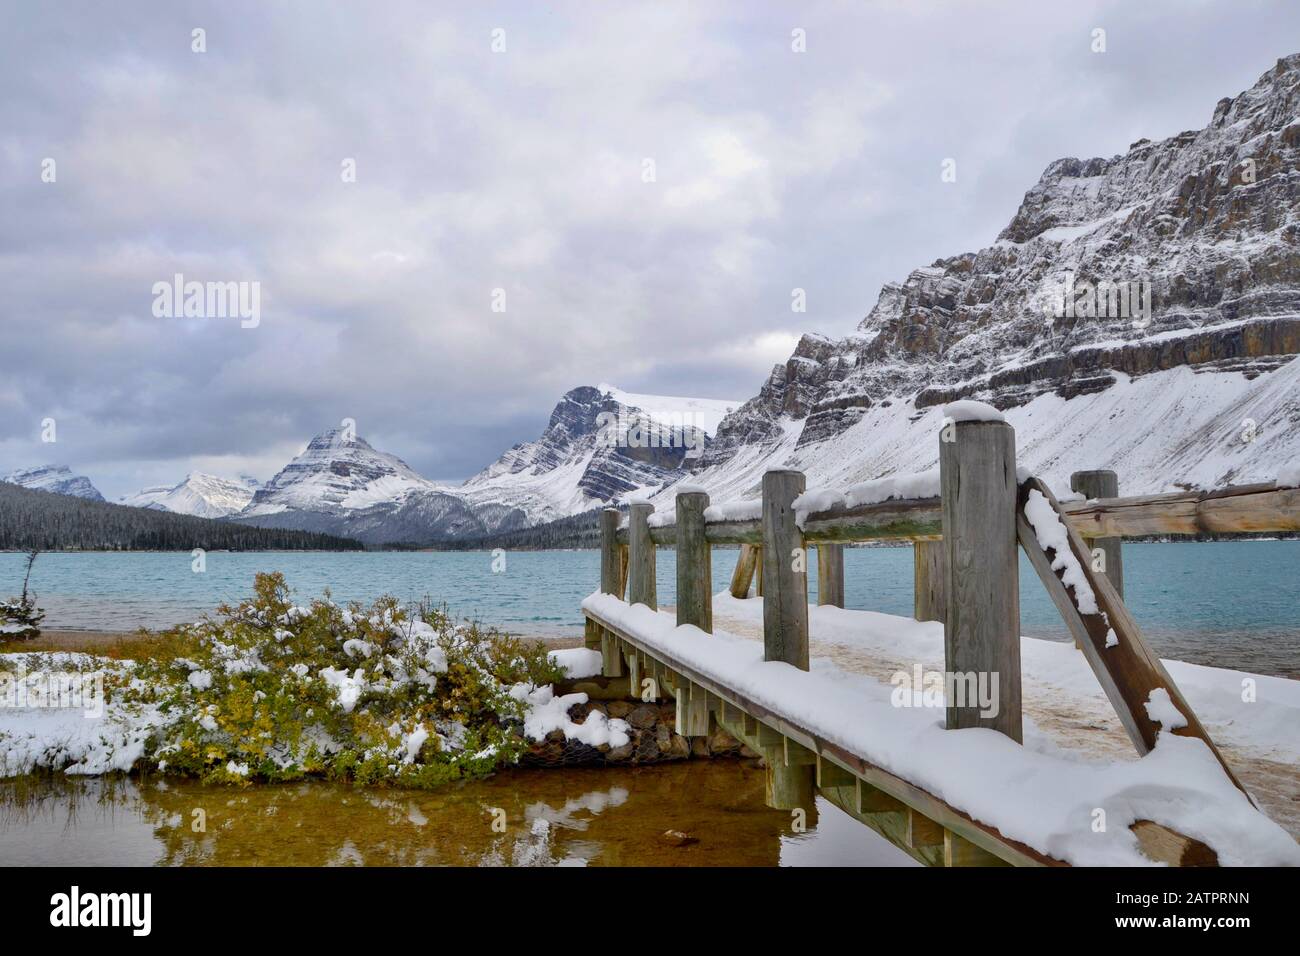 Eau bleue du lac Bow, montagnes couvertes de neige. Pont en bois, nuages gris, vue de la rive. Parc National Banff, Montagnes Rocheuses, Canada. Banque D'Images